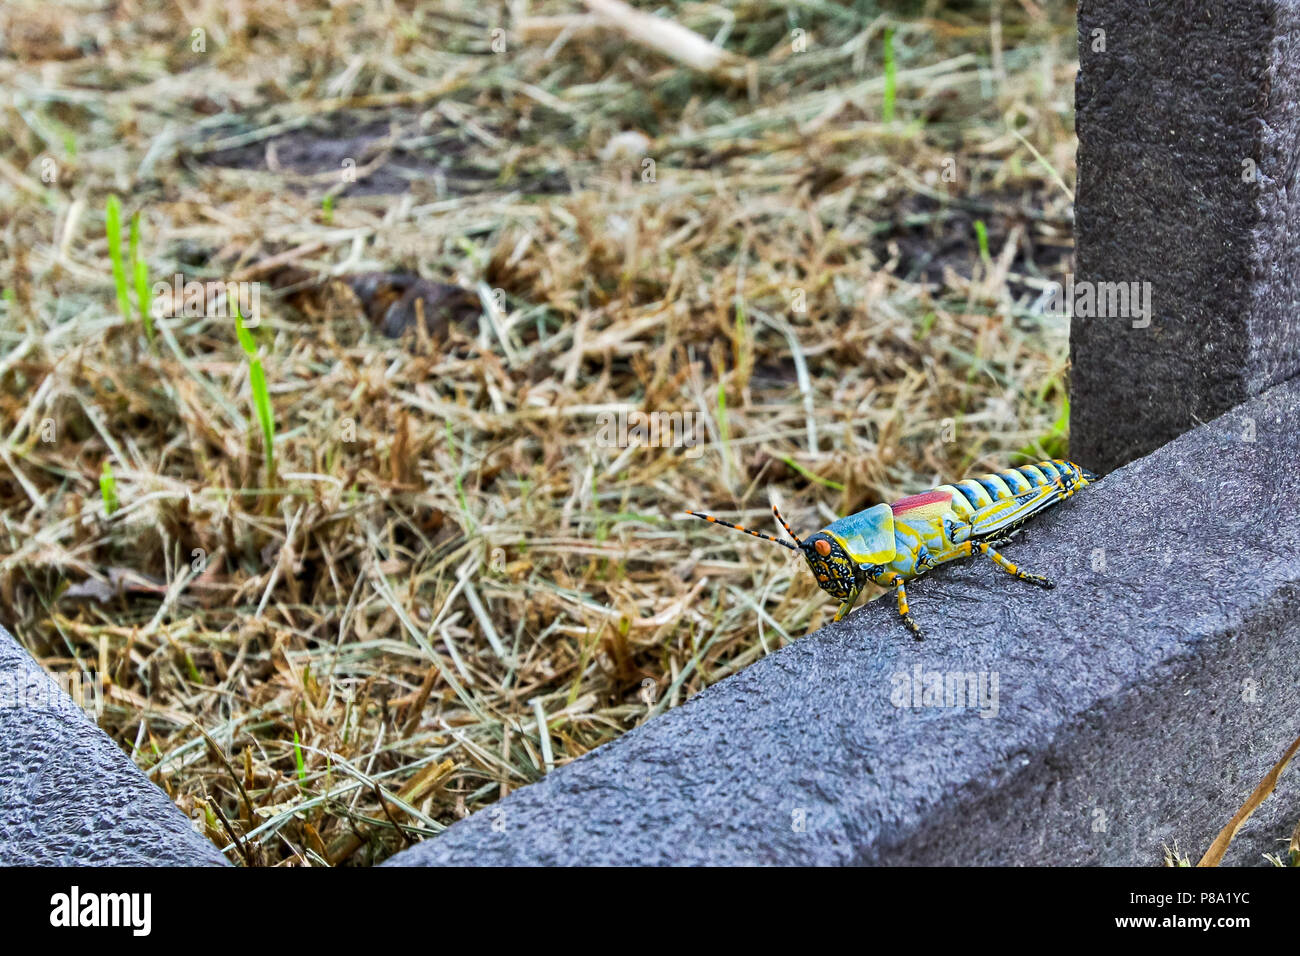 Colorato insetto locust seduta su una panchina nel campo Foto Stock